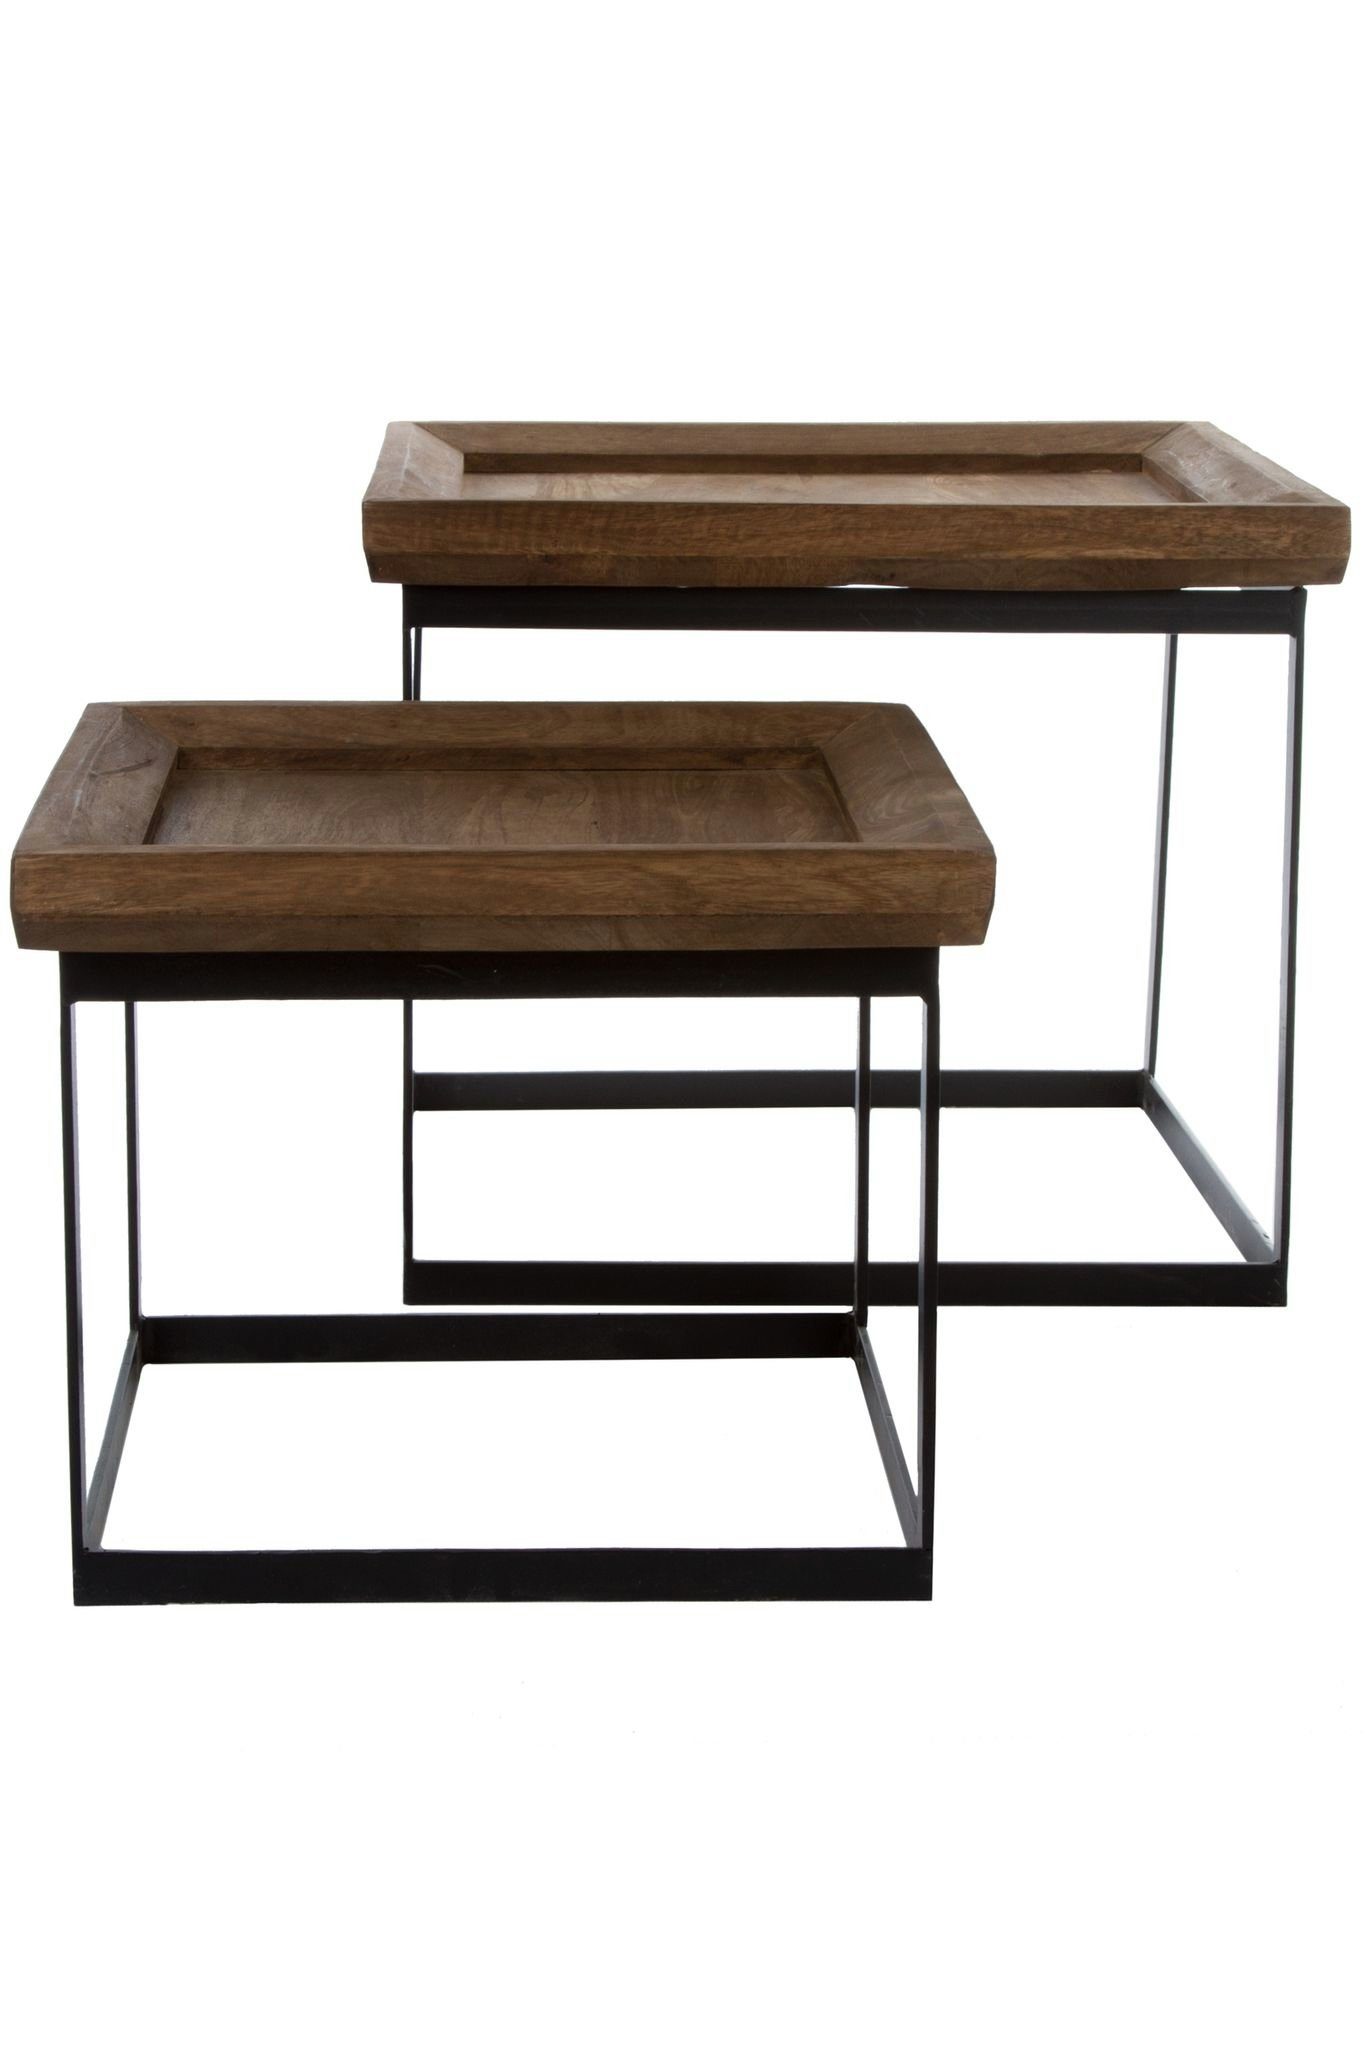 elbmöbel Couchtisch SET Beistelltisch Konsole Tisch rustikal Metall (FALSCH), Couchtisch: 2er Tisch Set 53x46x53 cm holz schwarz | Couchtische